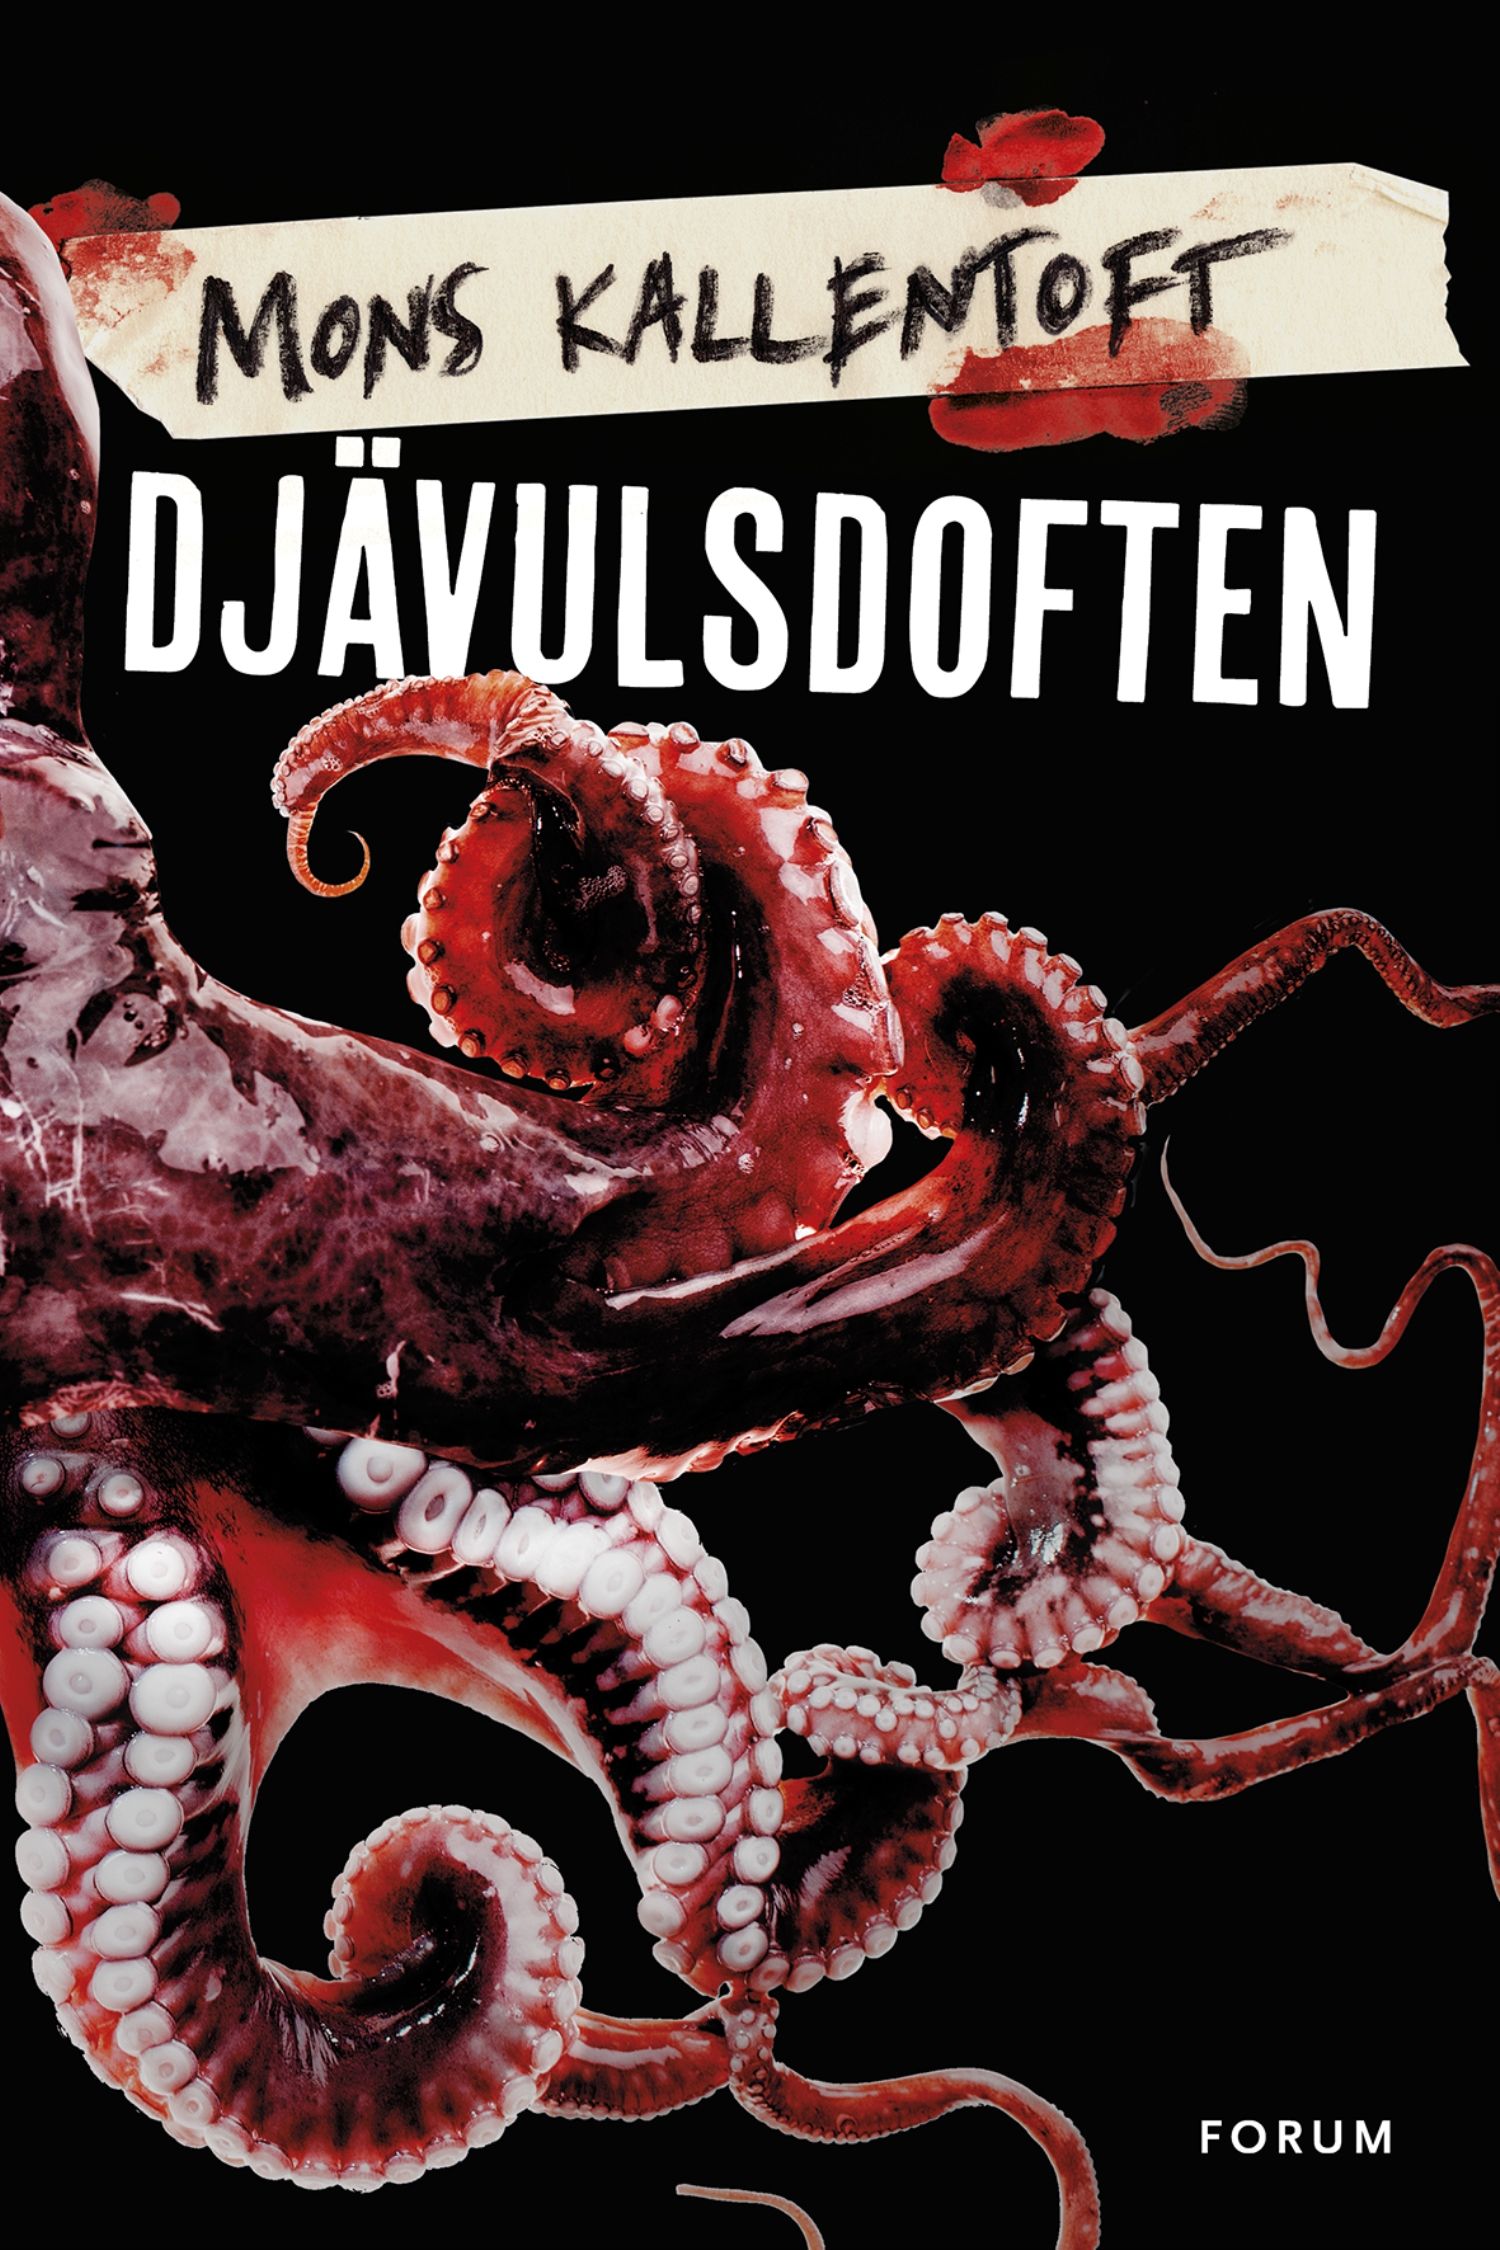 Djävulsdoften, eBook by Mons Kallentoft